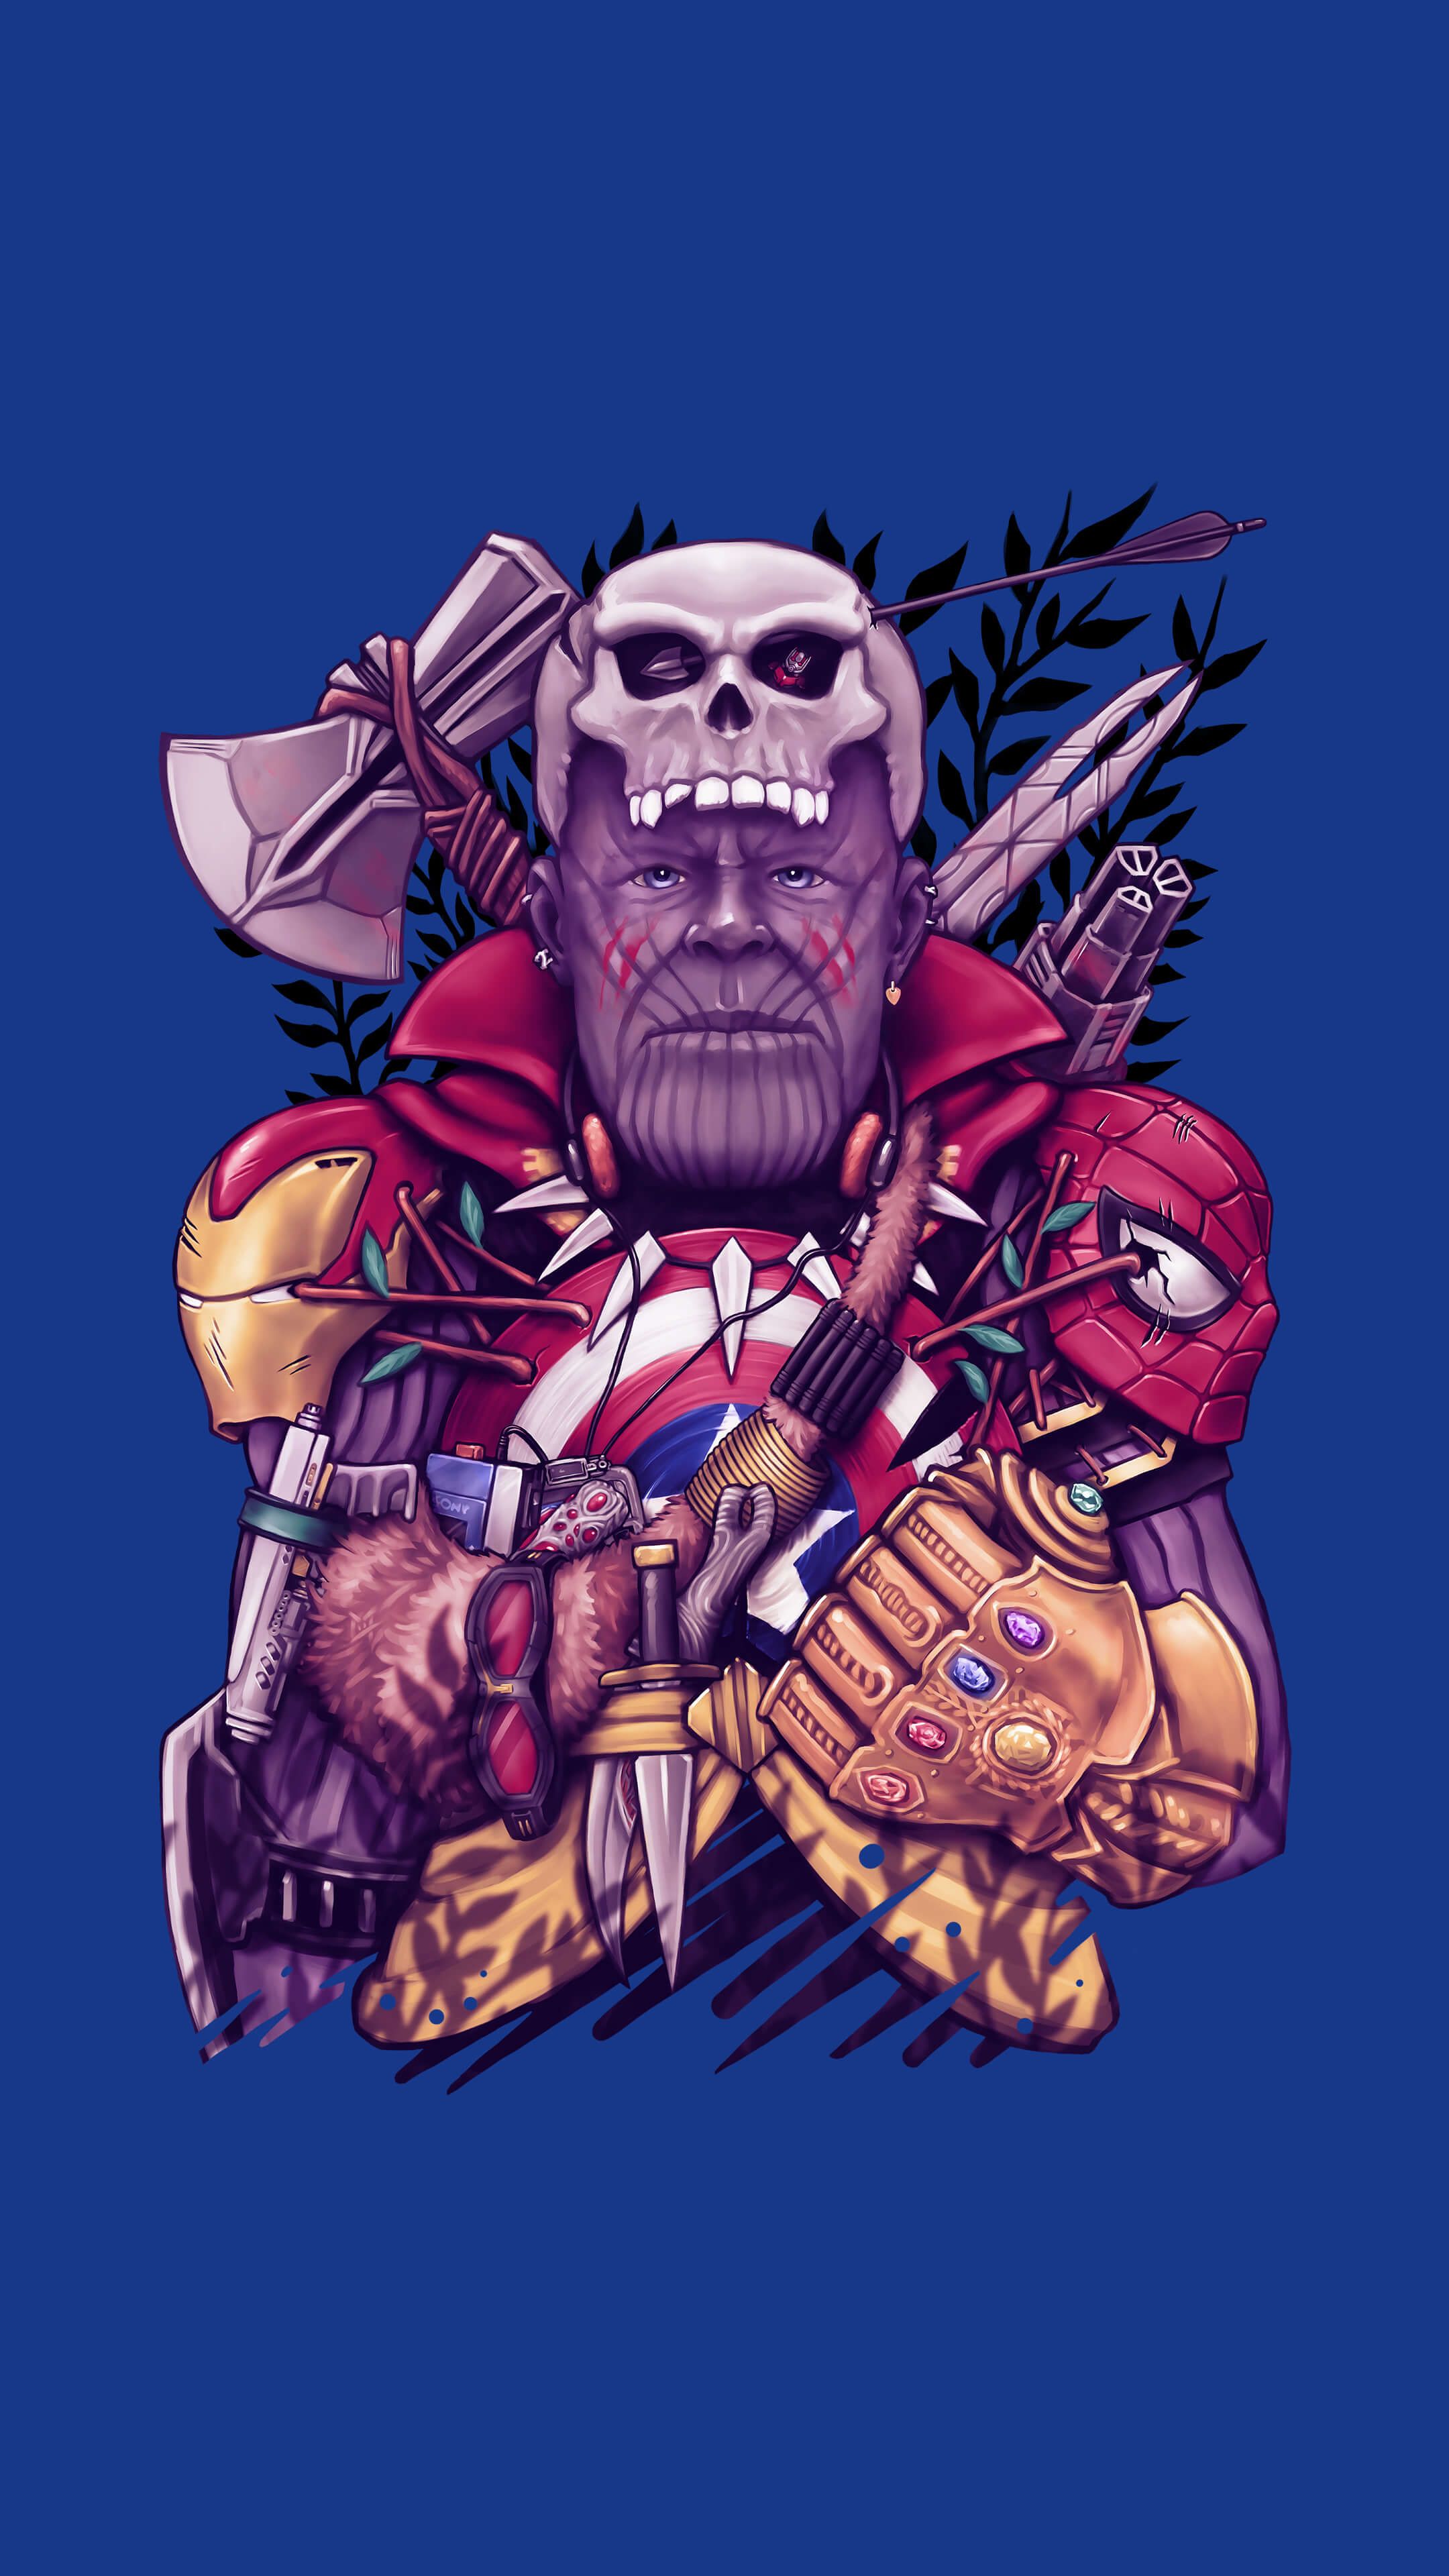 Avengers endgame #avengers #infinitywar #endgame #wallpaper